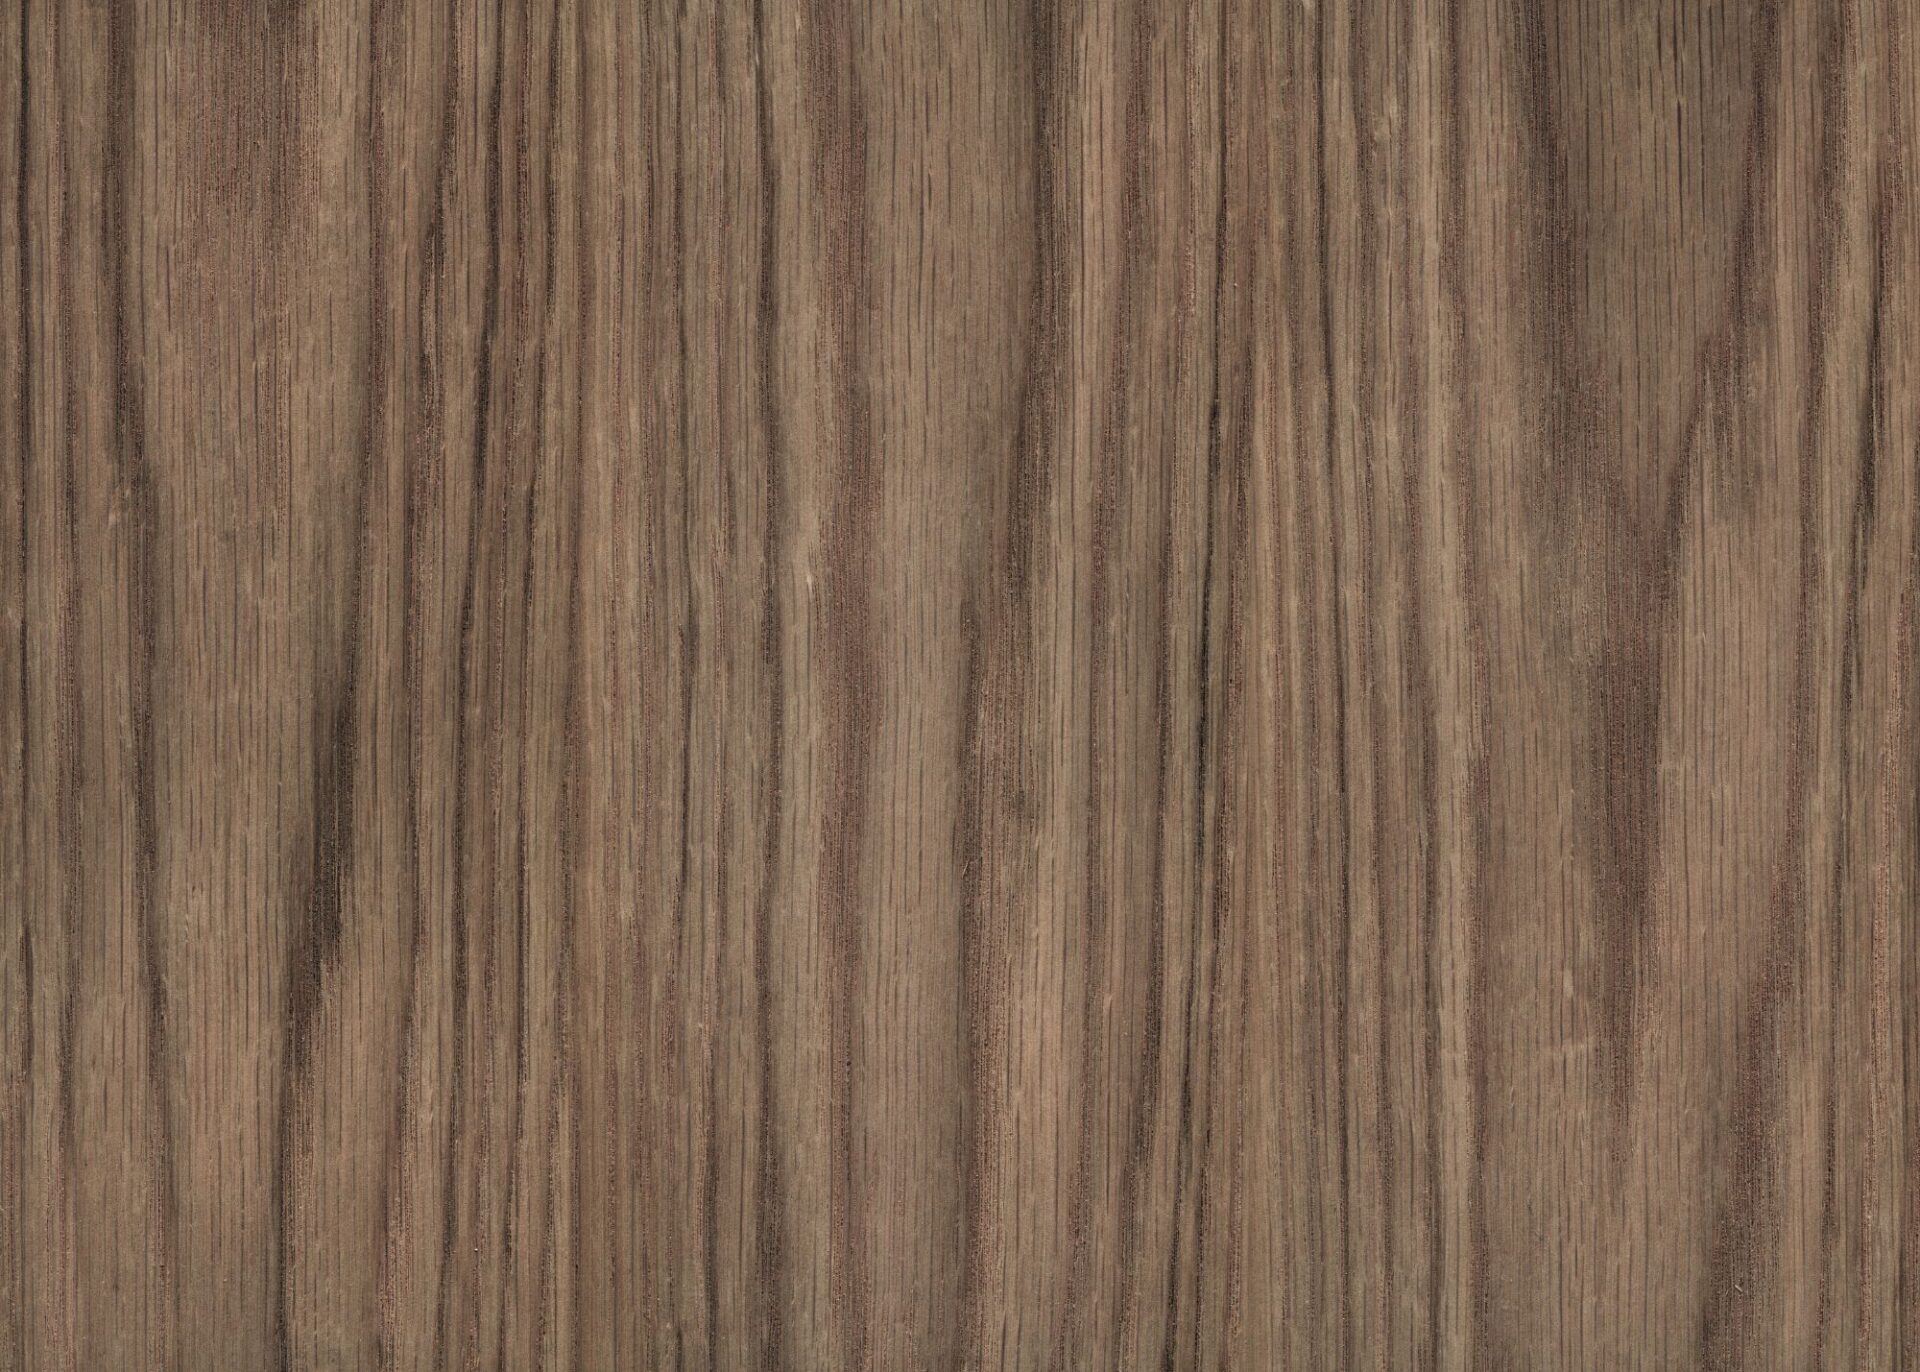 ¿Por qué elegir la madera de encino para hacer muebles?